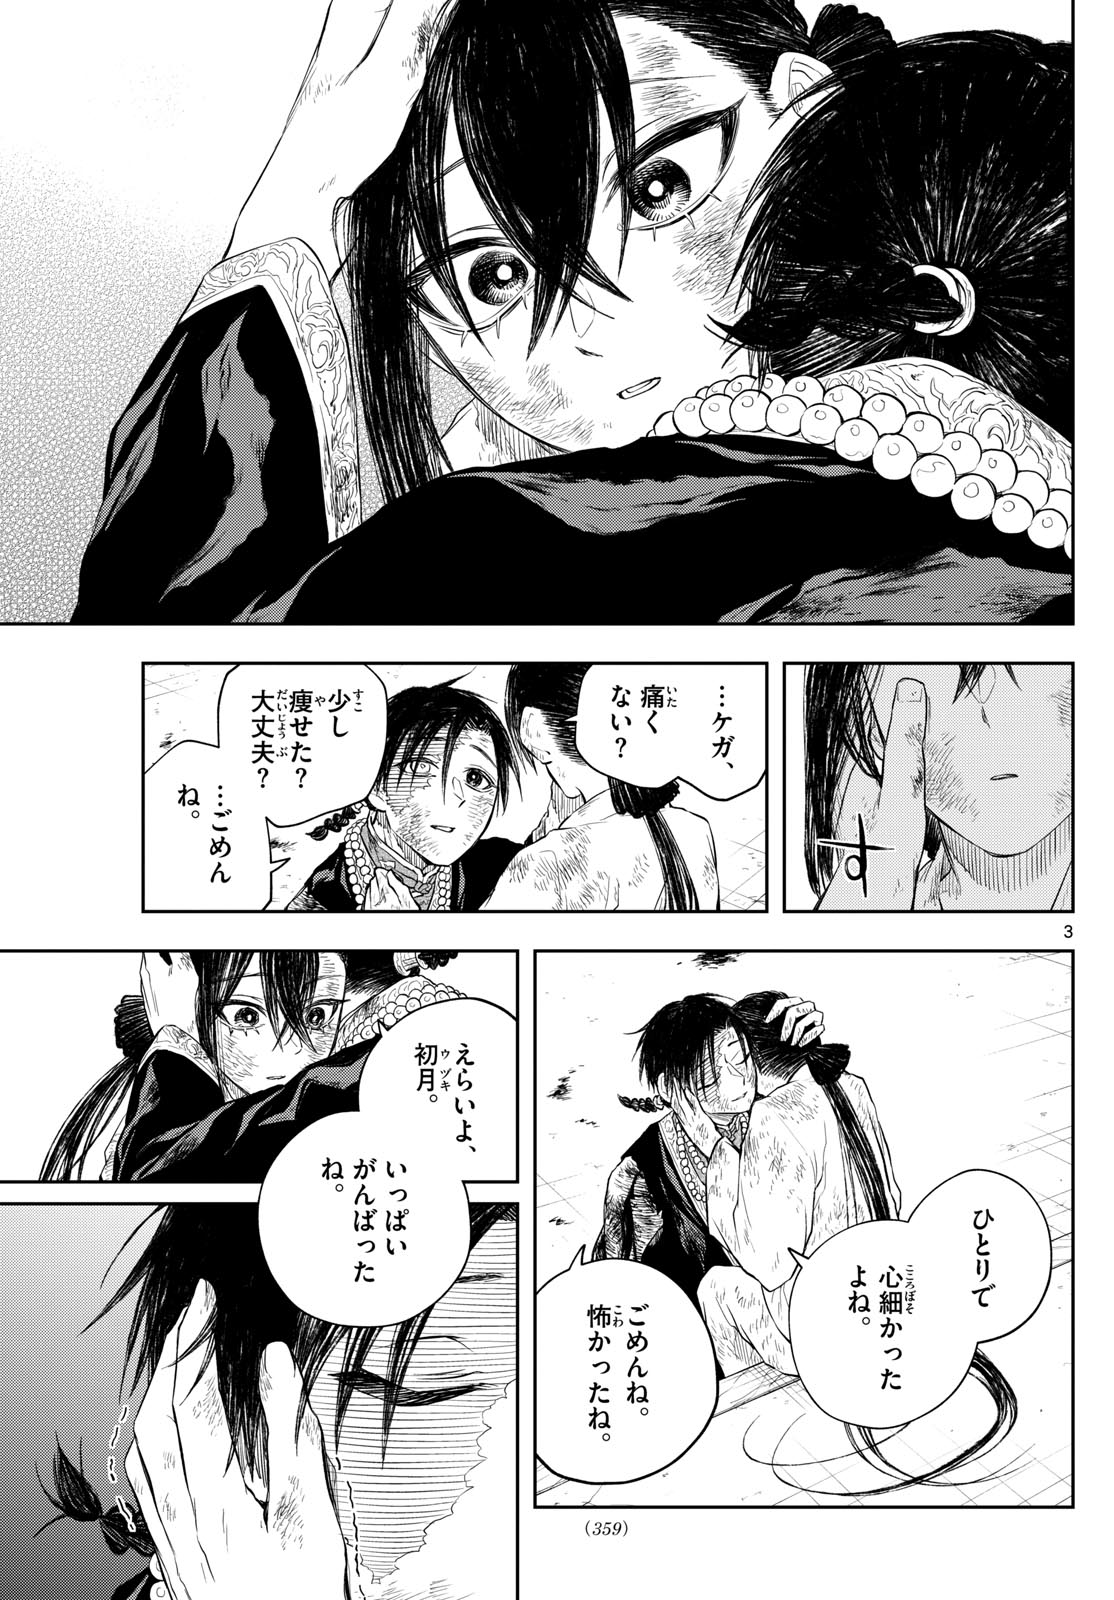 Akatsuki Jihen - Chapter 46 - Page 3